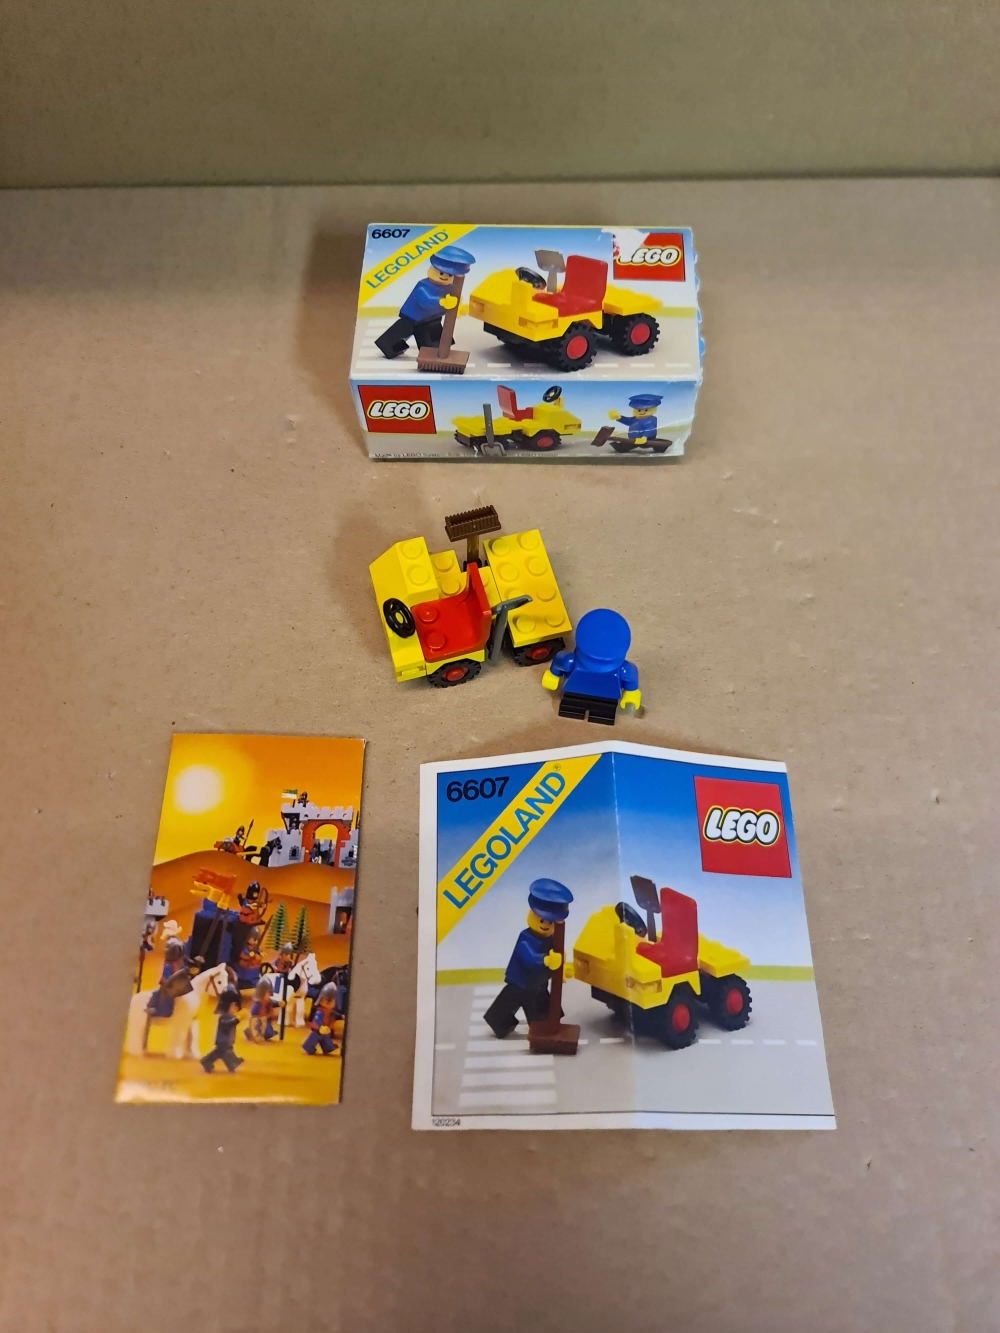 Sett 6607 fra Lego Classic Town serien.
Mint tilstand.
Komplett med manual, eske og reklame.